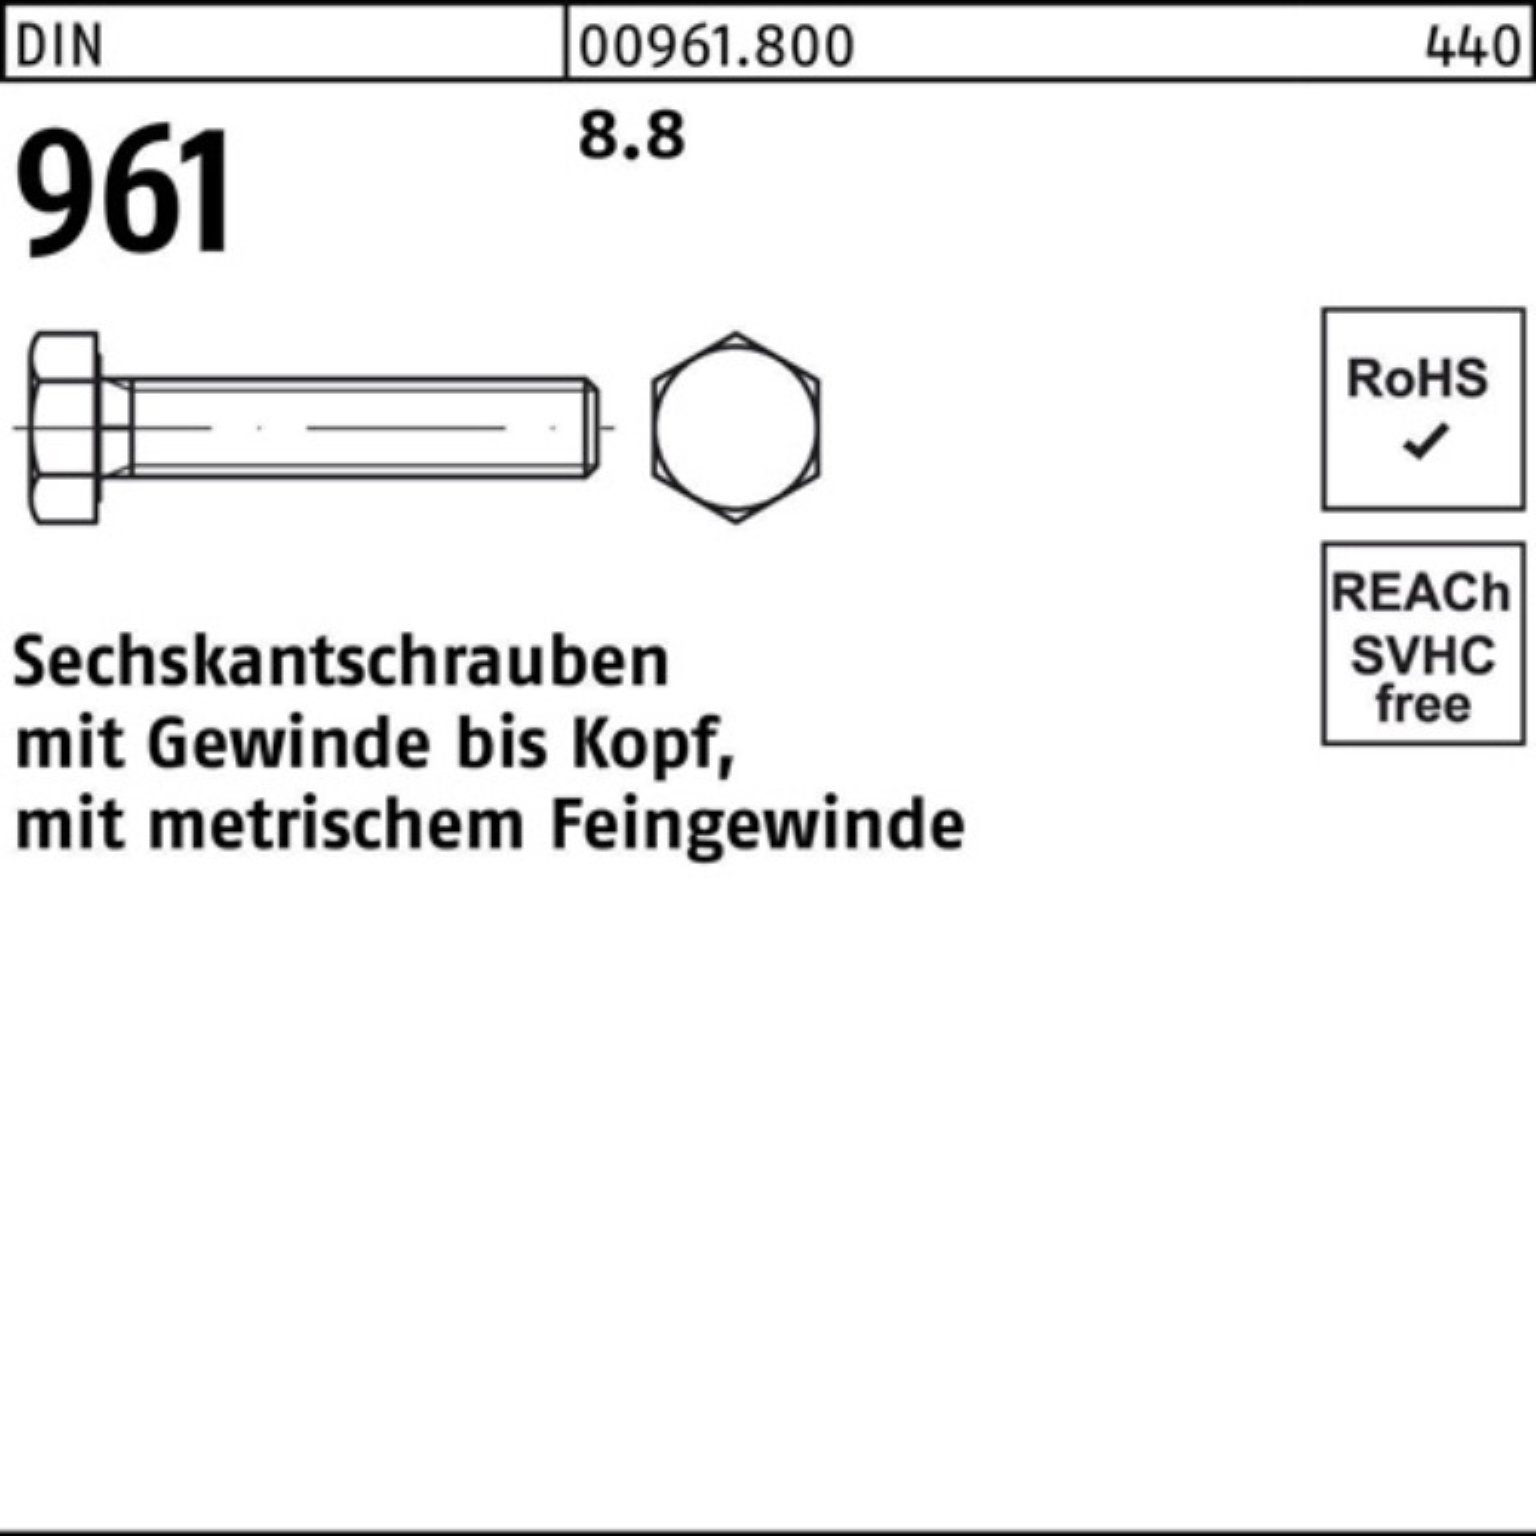 Reyher Sechskantschraube 100er Pack 8.8 DIN 961 961 DIN 1 Sechskantschraube M42x3x200 Stück VG